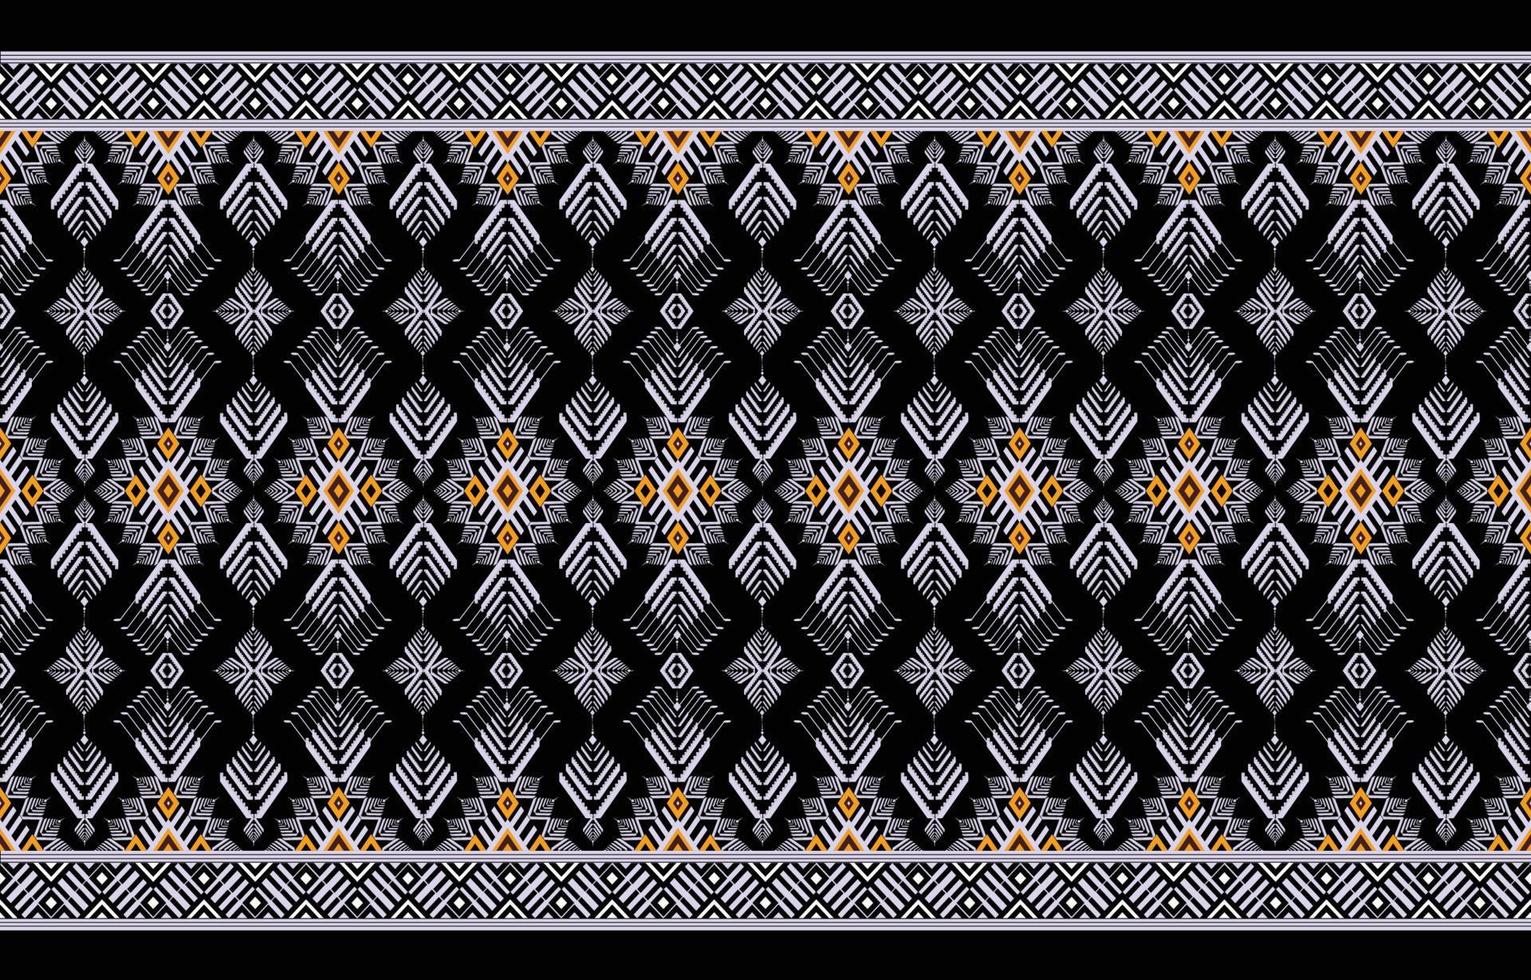 geométrico étnico oriental pattern.dark tom ocidental, asteca, tribal tradicional. padrão sem emenda. tecido, azulejo, fundo, tapete, papel de parede, roupas, sarongue, embrulho, batik, tecido, padrão vetorial. vetor